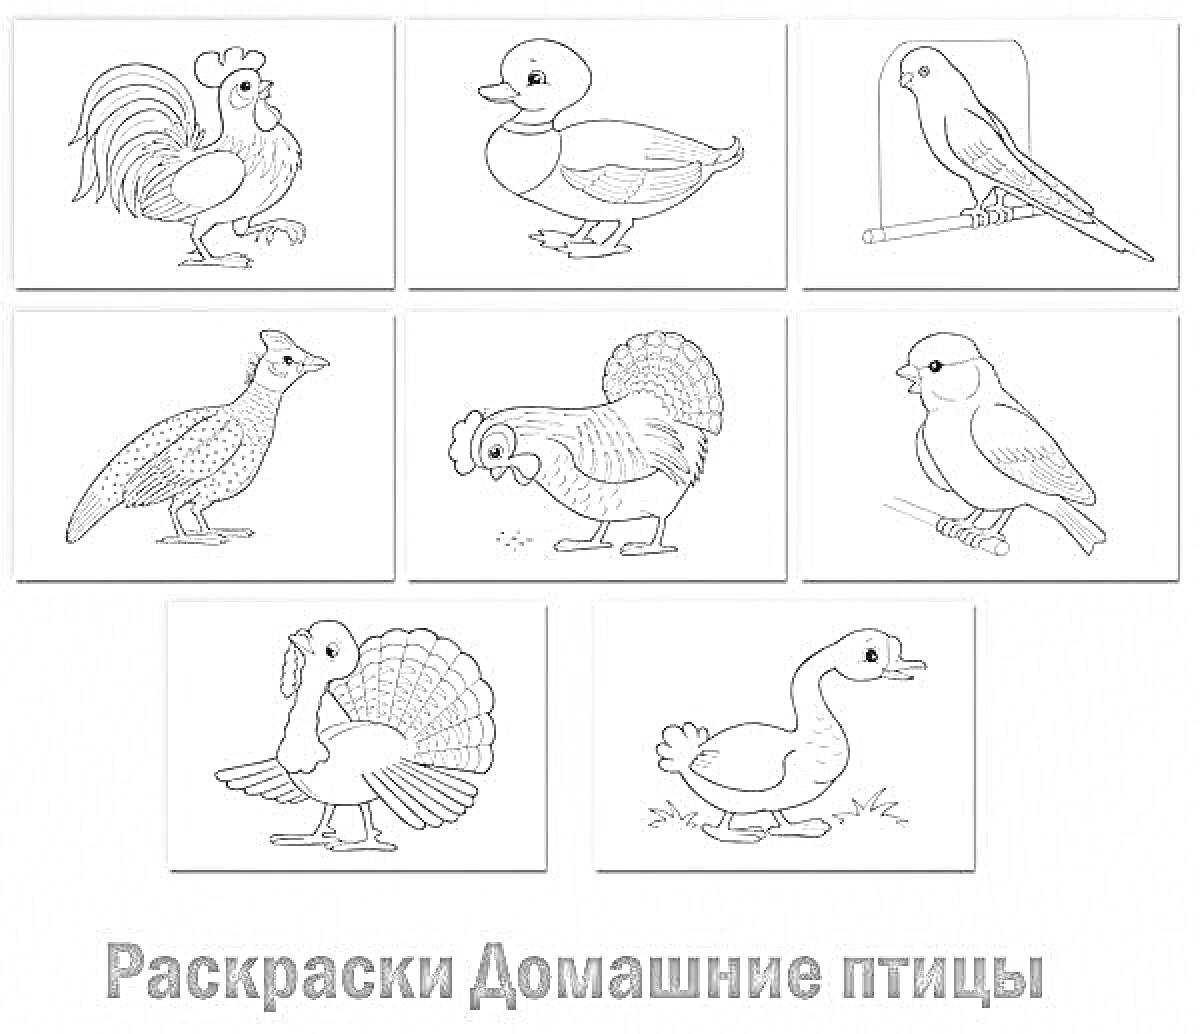 Раскраска Сельскохозяйственные домашние птицы: петух, утка, канарейка, павлин, курица, голубь, индюк, гусь